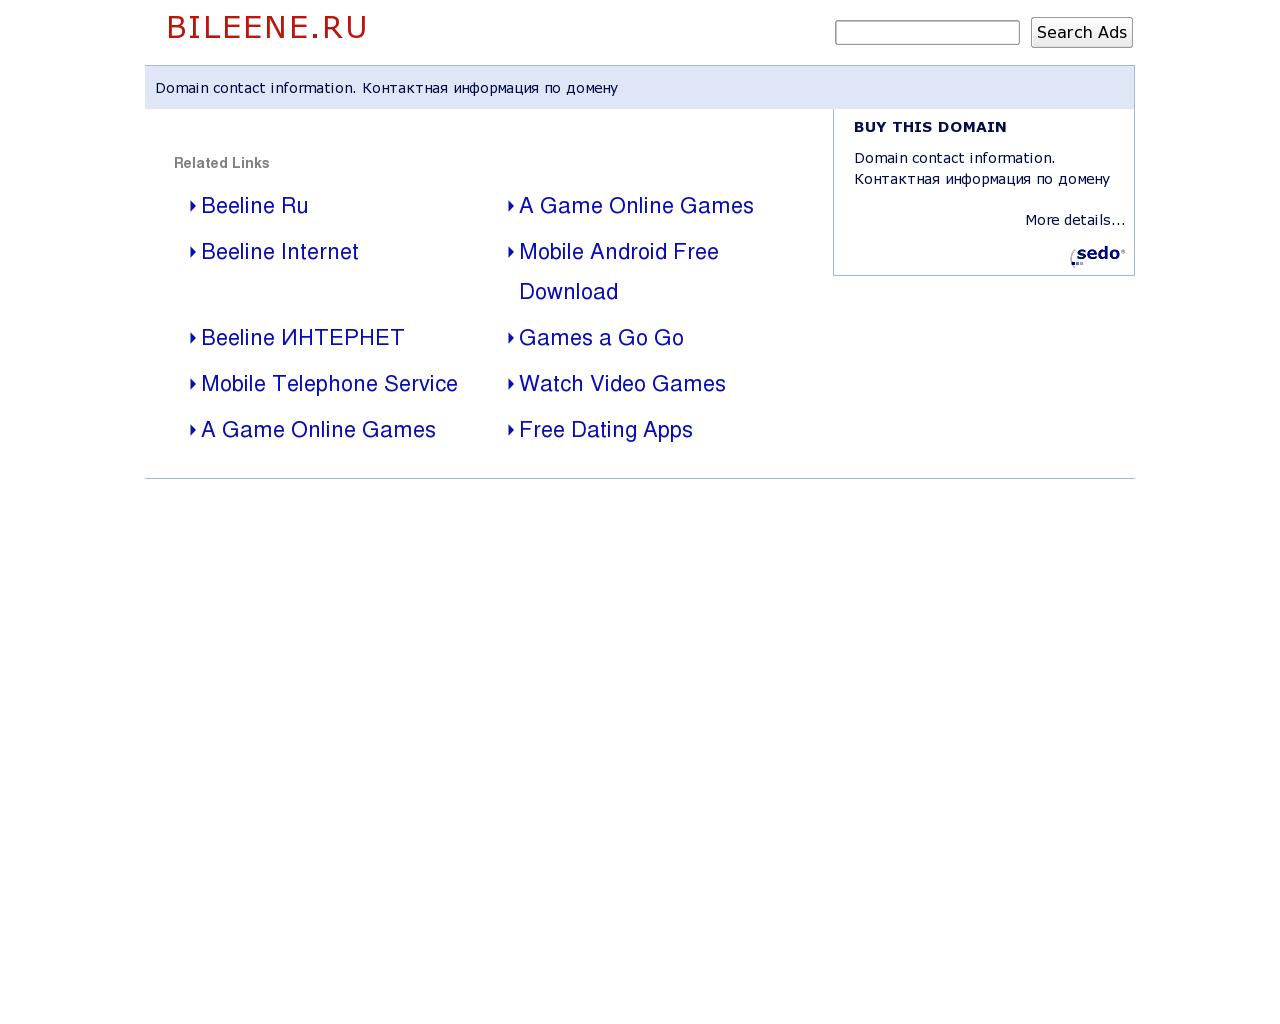 Изображение сайта bileene.ru в разрешении 1280x1024